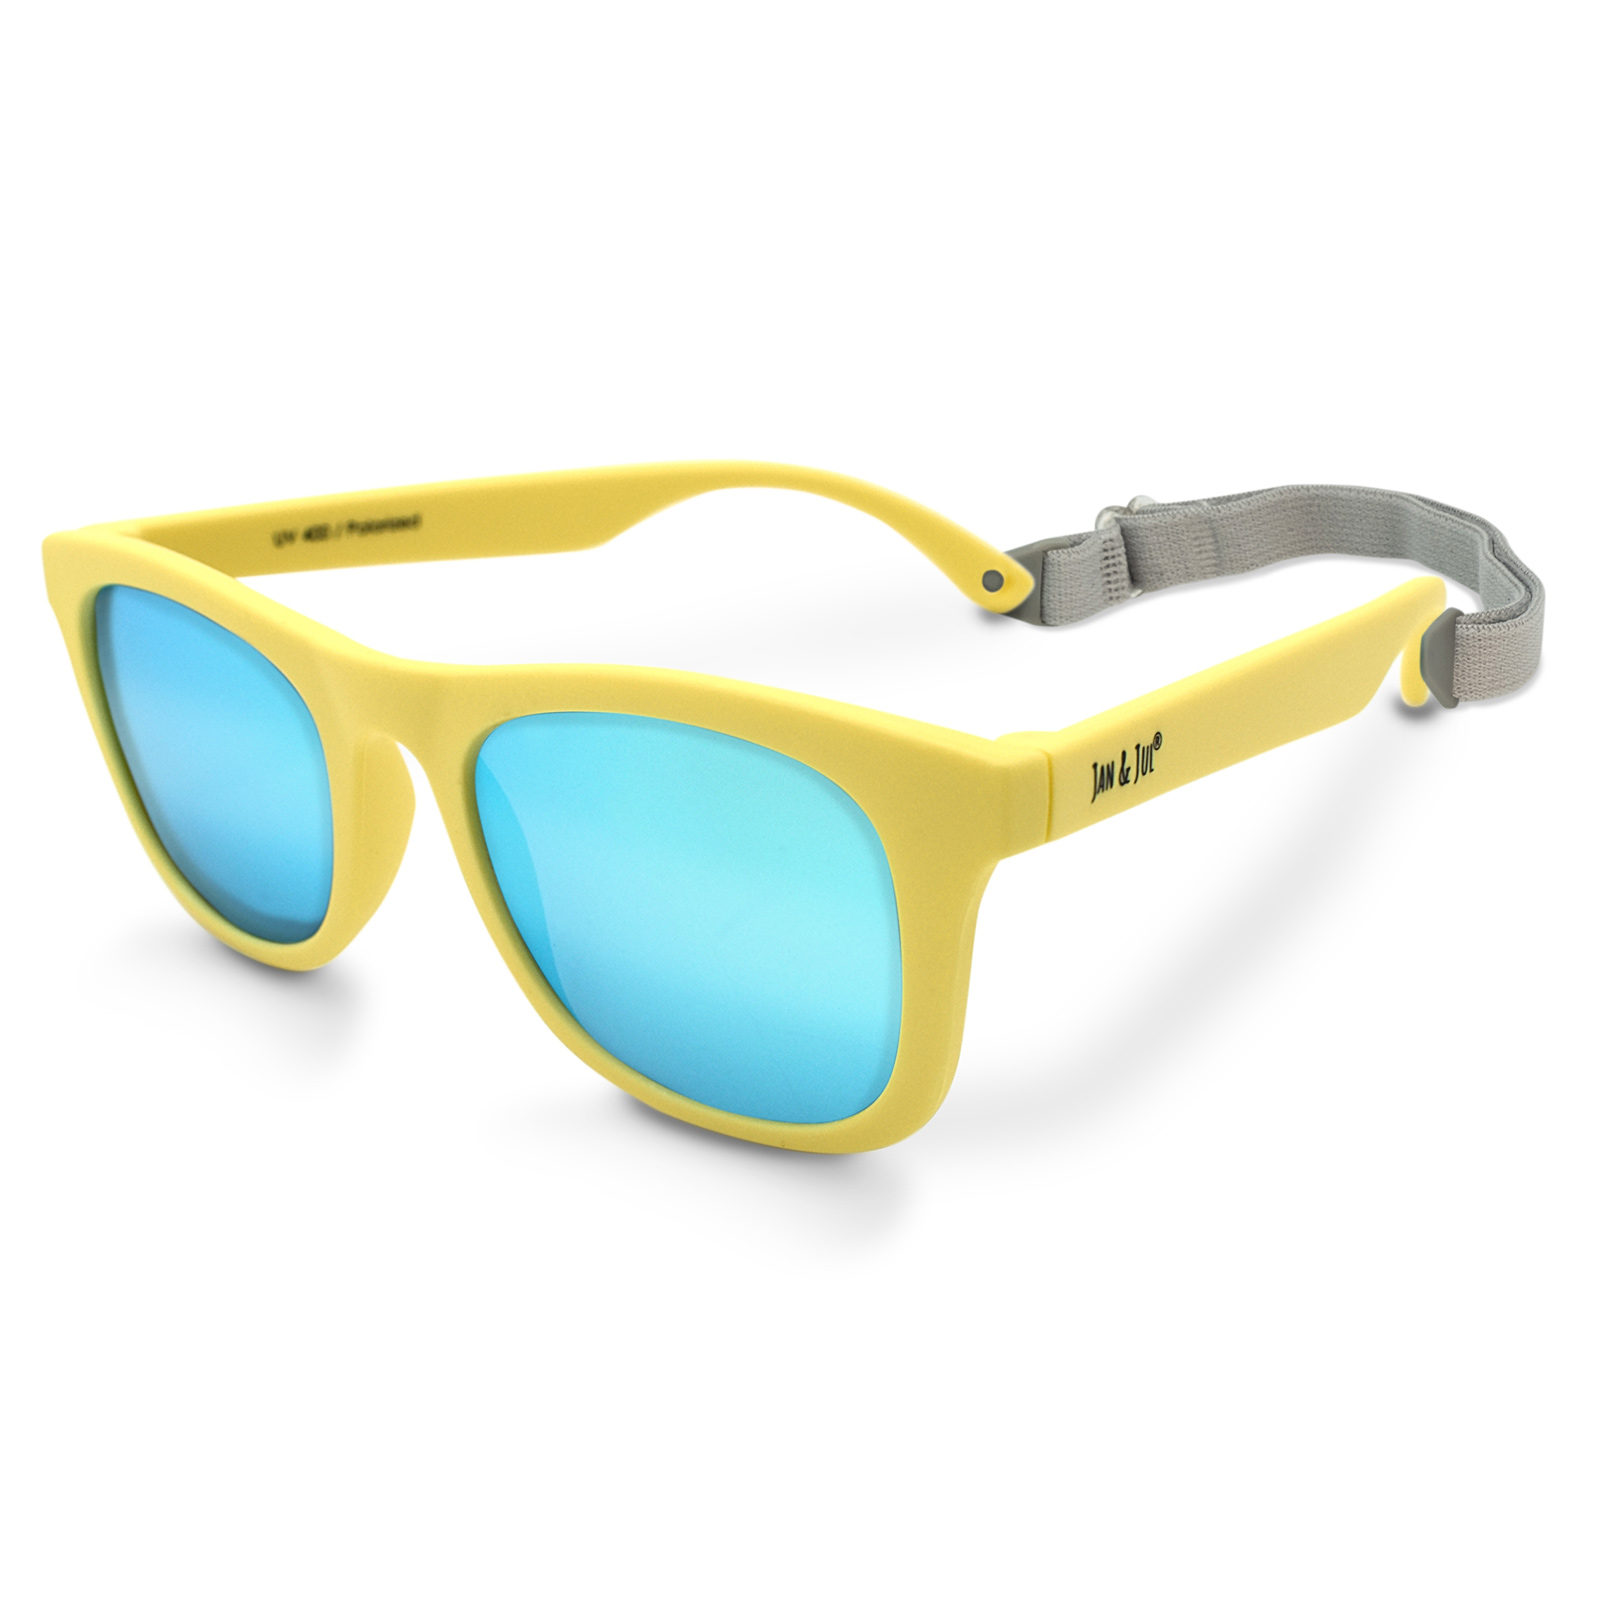 Jan & Jul Polarized Sunglasses for Toddler Girls, Non-Breakable (M: 2 - 6 Years, Lemonade Aurora) - image 1 of 3